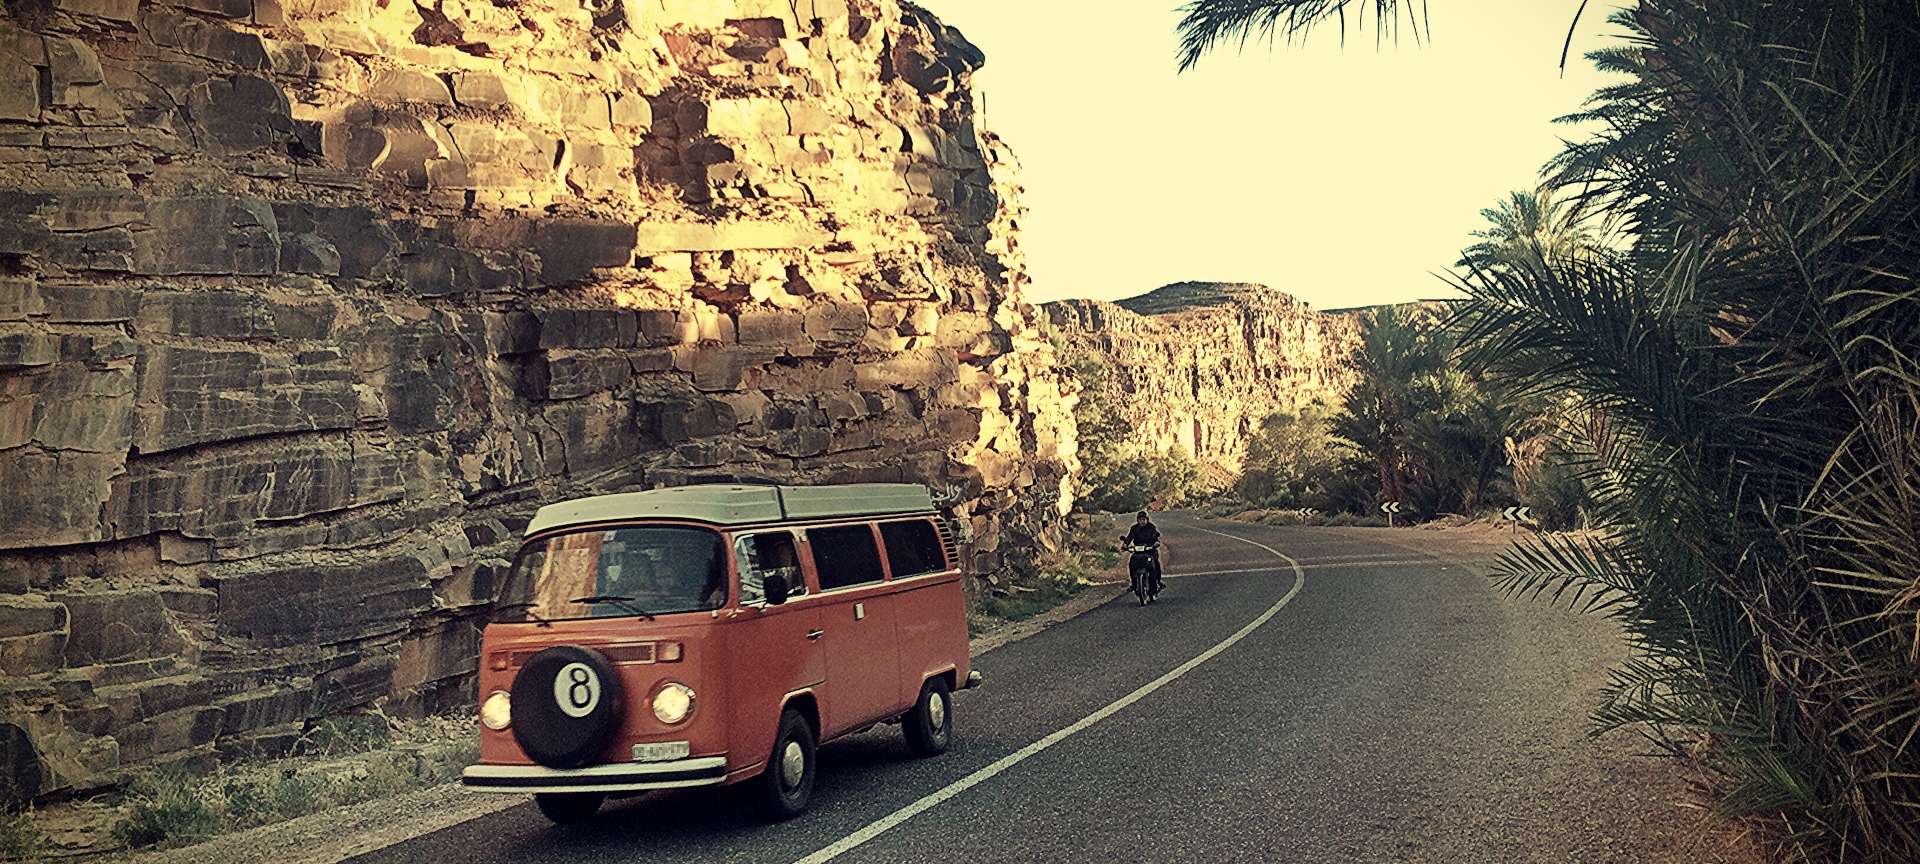 oranges VW-Büssli auf Abenteuer in Afrika auf Strasse zwischen Felsen und Palmen